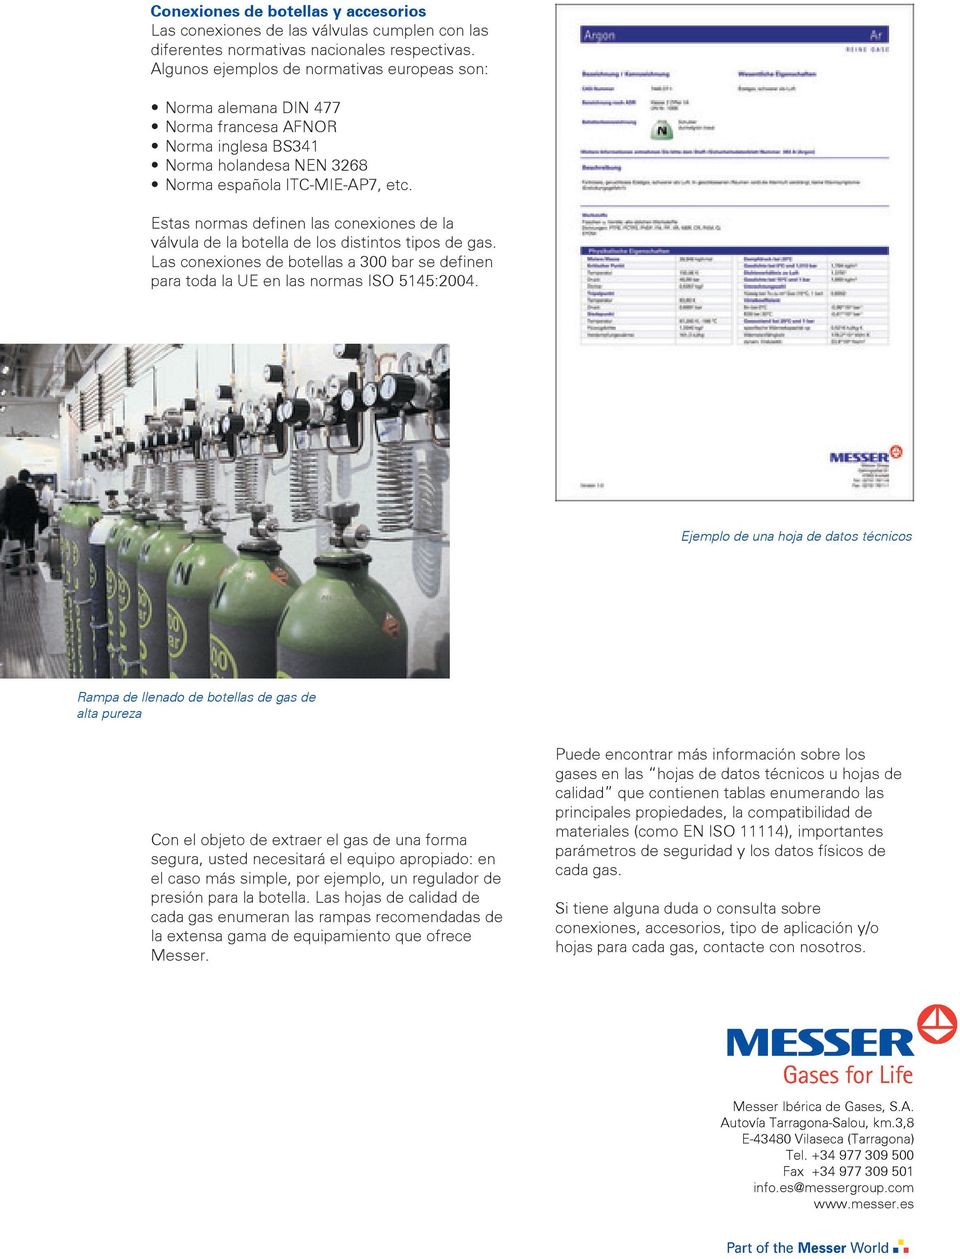 Estas normas definen las conexiones de la válvula de la botella de los distintos tipos de gas. Las conexiones de botellas a bar se definen para toda la UE en las normas ISO 5145:4.